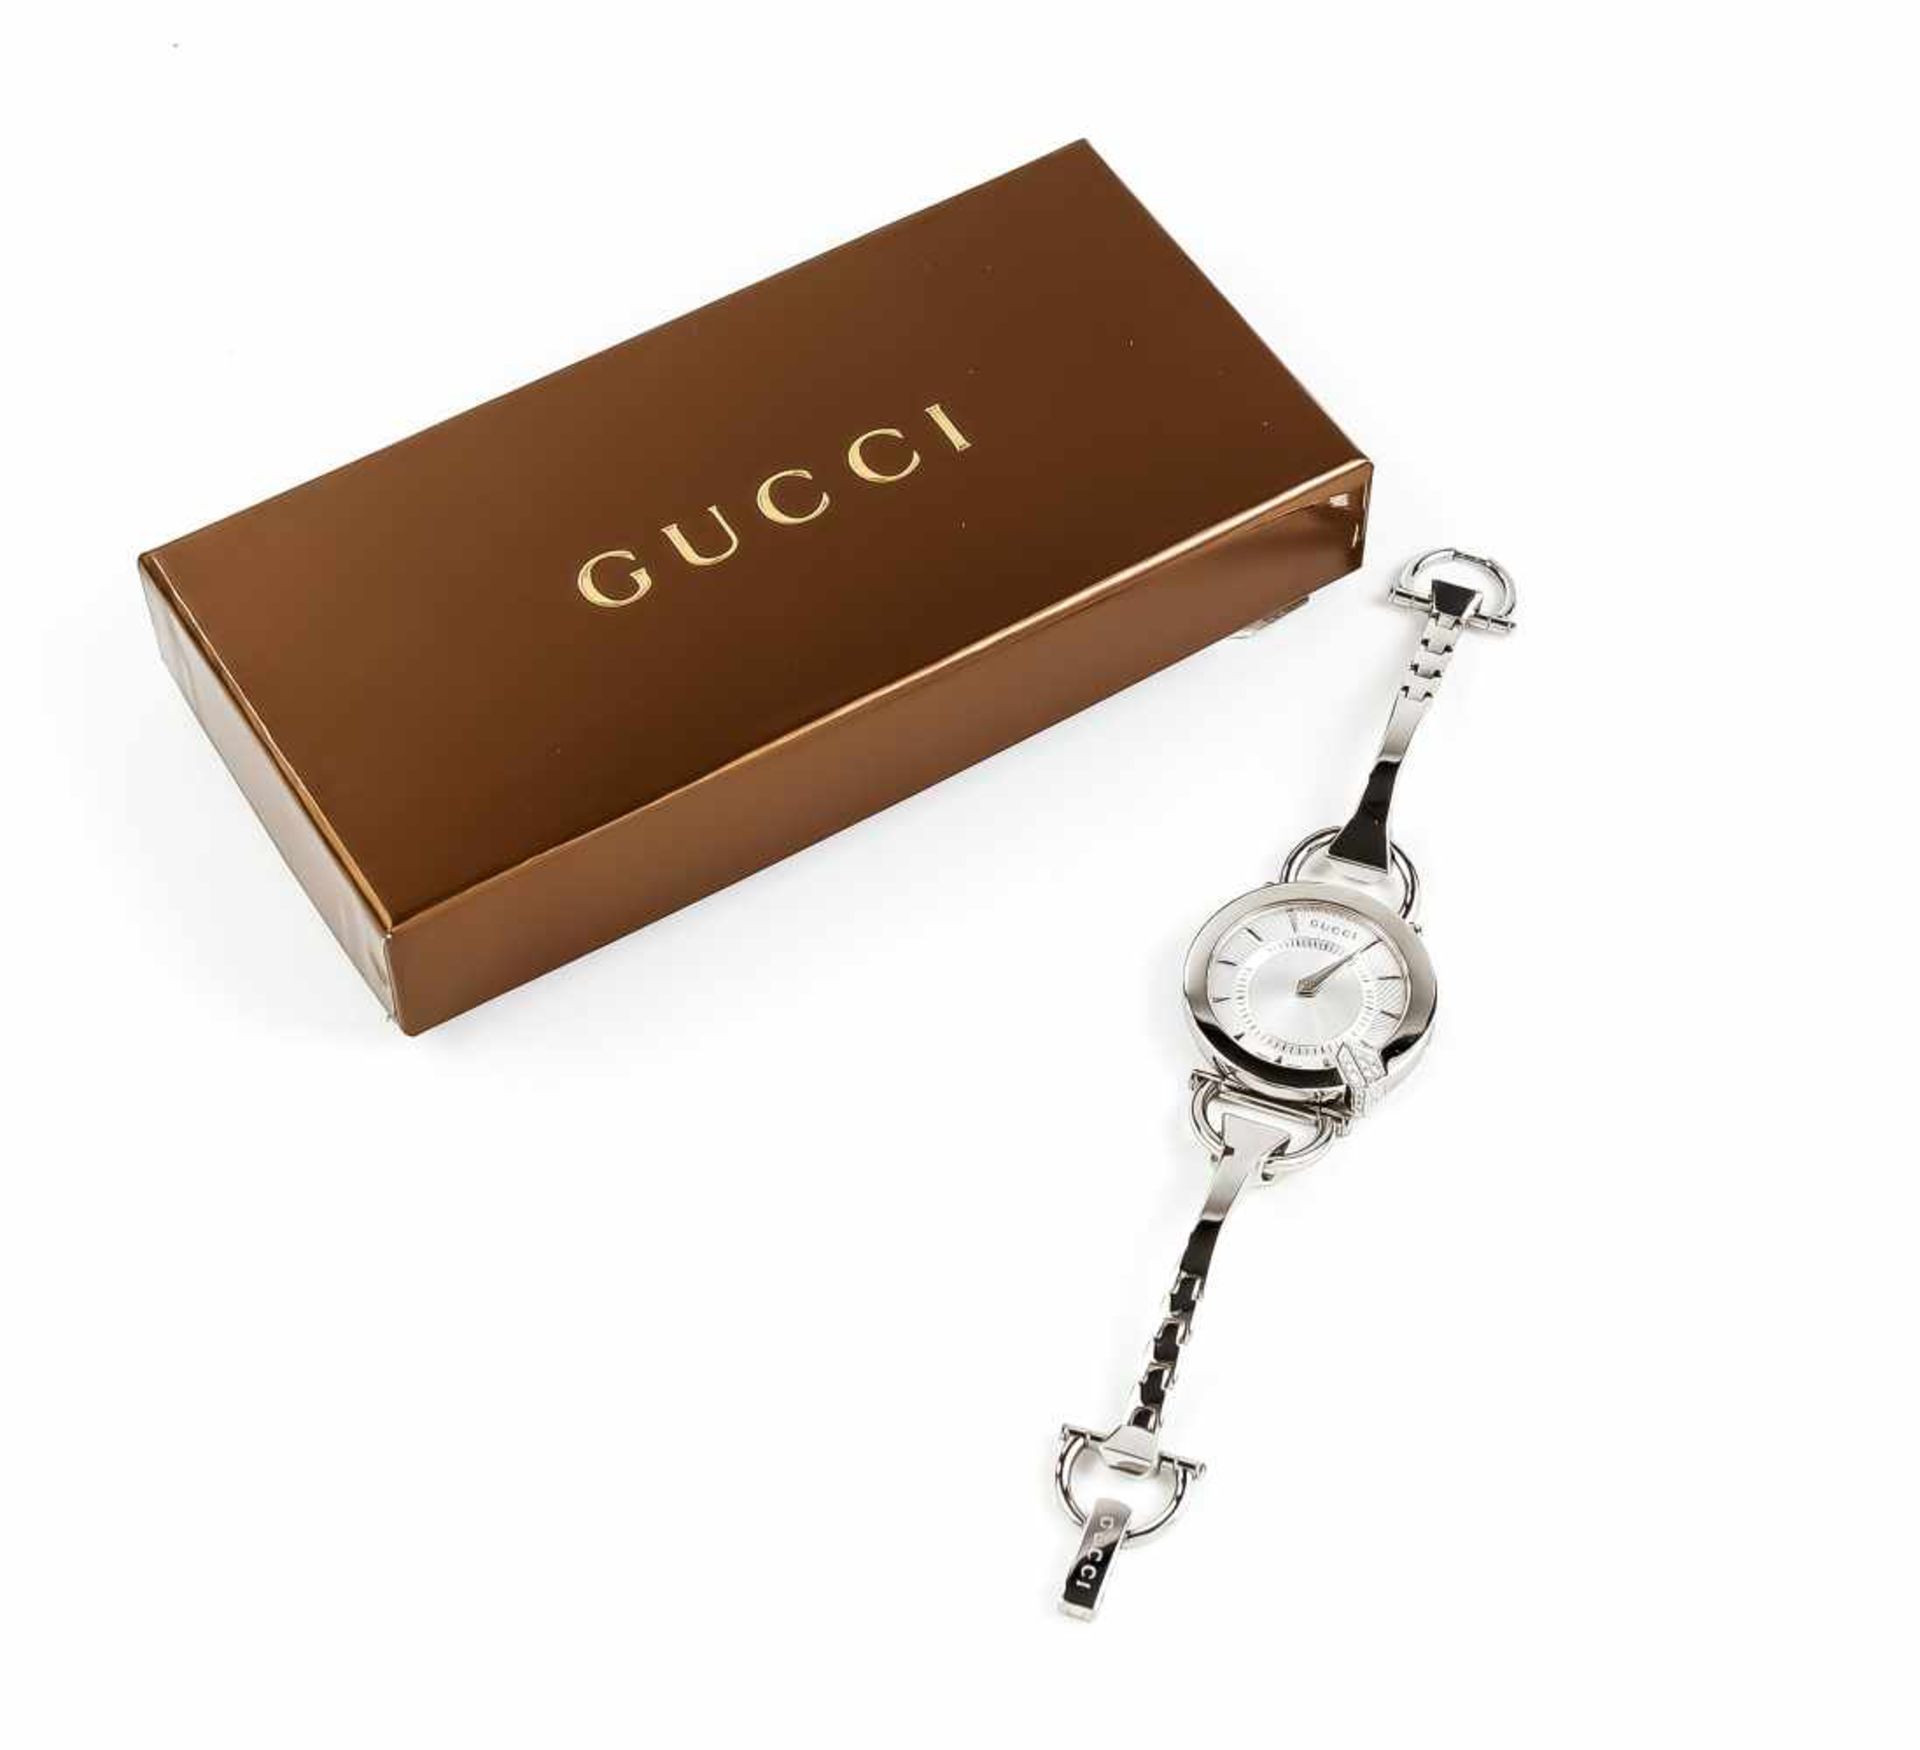 Gucci Damenquarzuhr, Mod. 122.5, in Anlehnung an einen Hufnagel und Steigbügel, mit 16